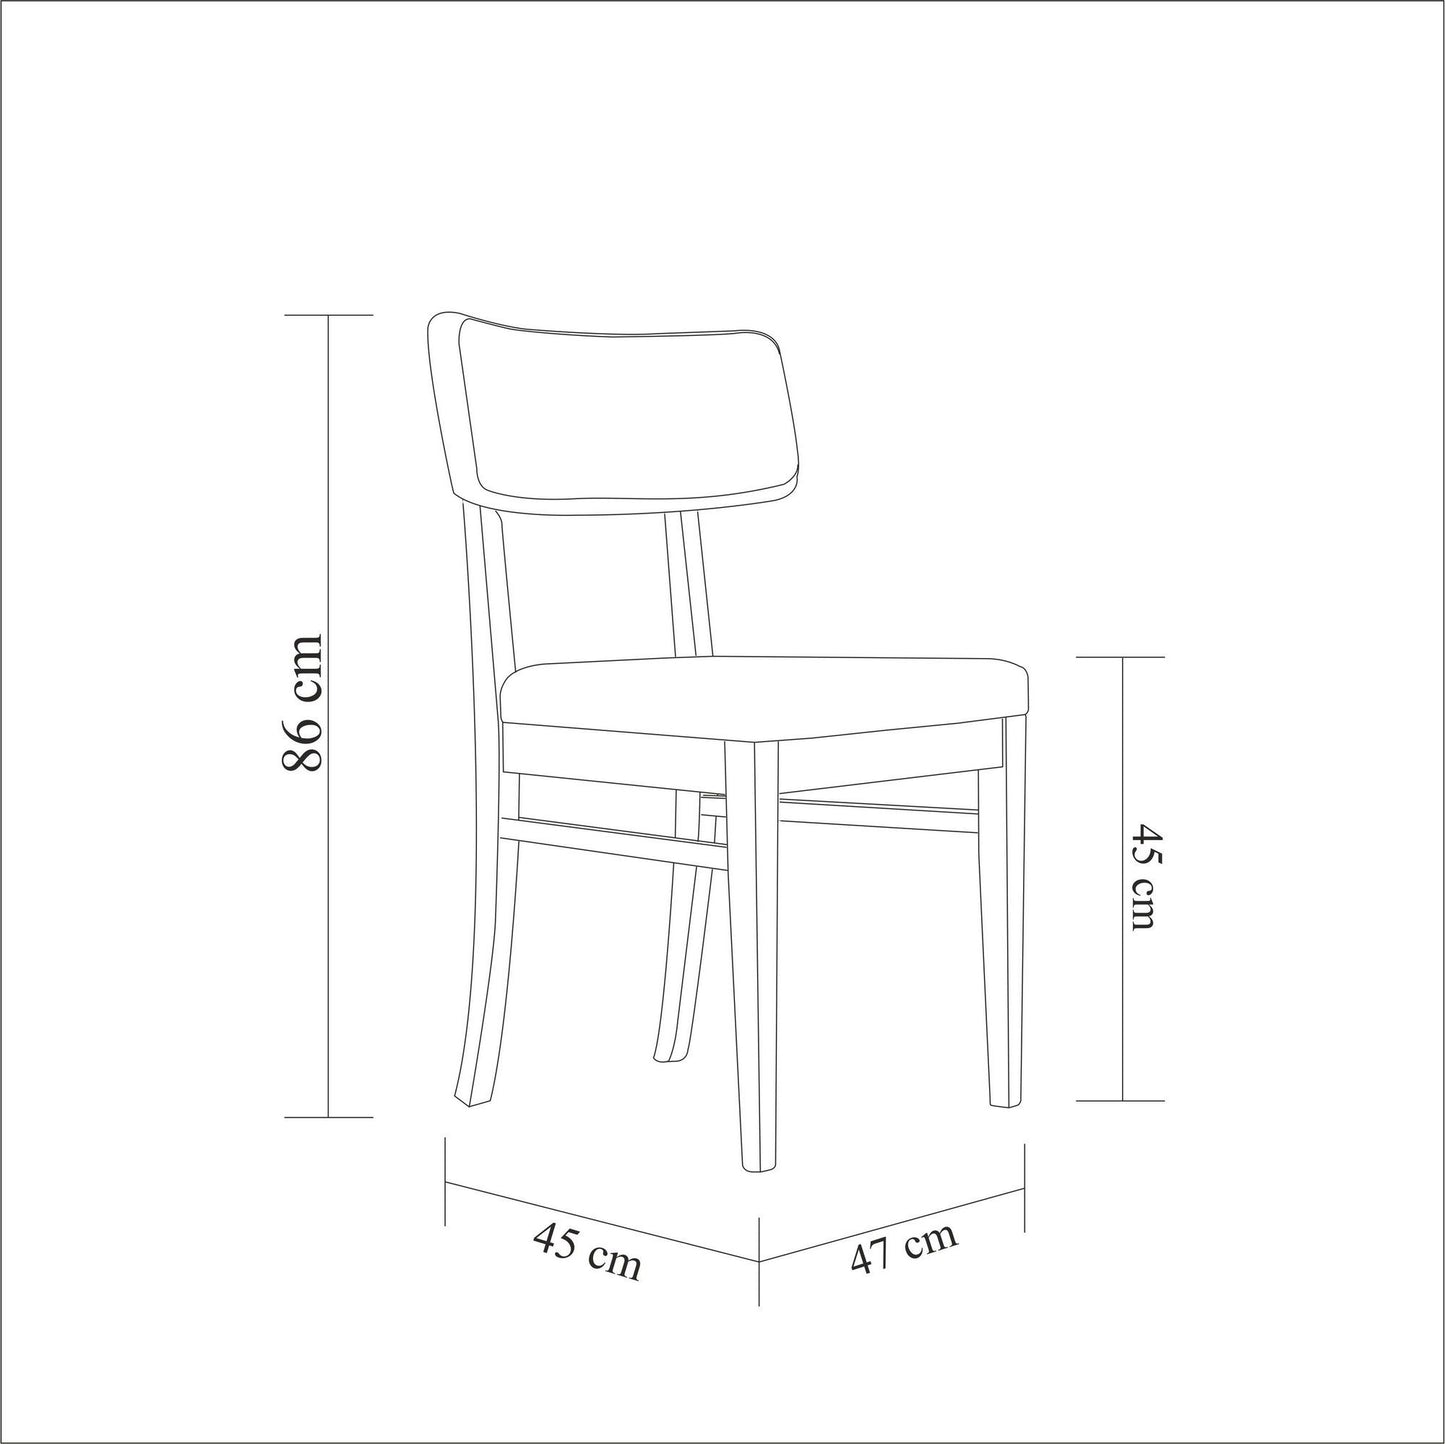 Madison - Sæt med bord og stole (5 stykker)